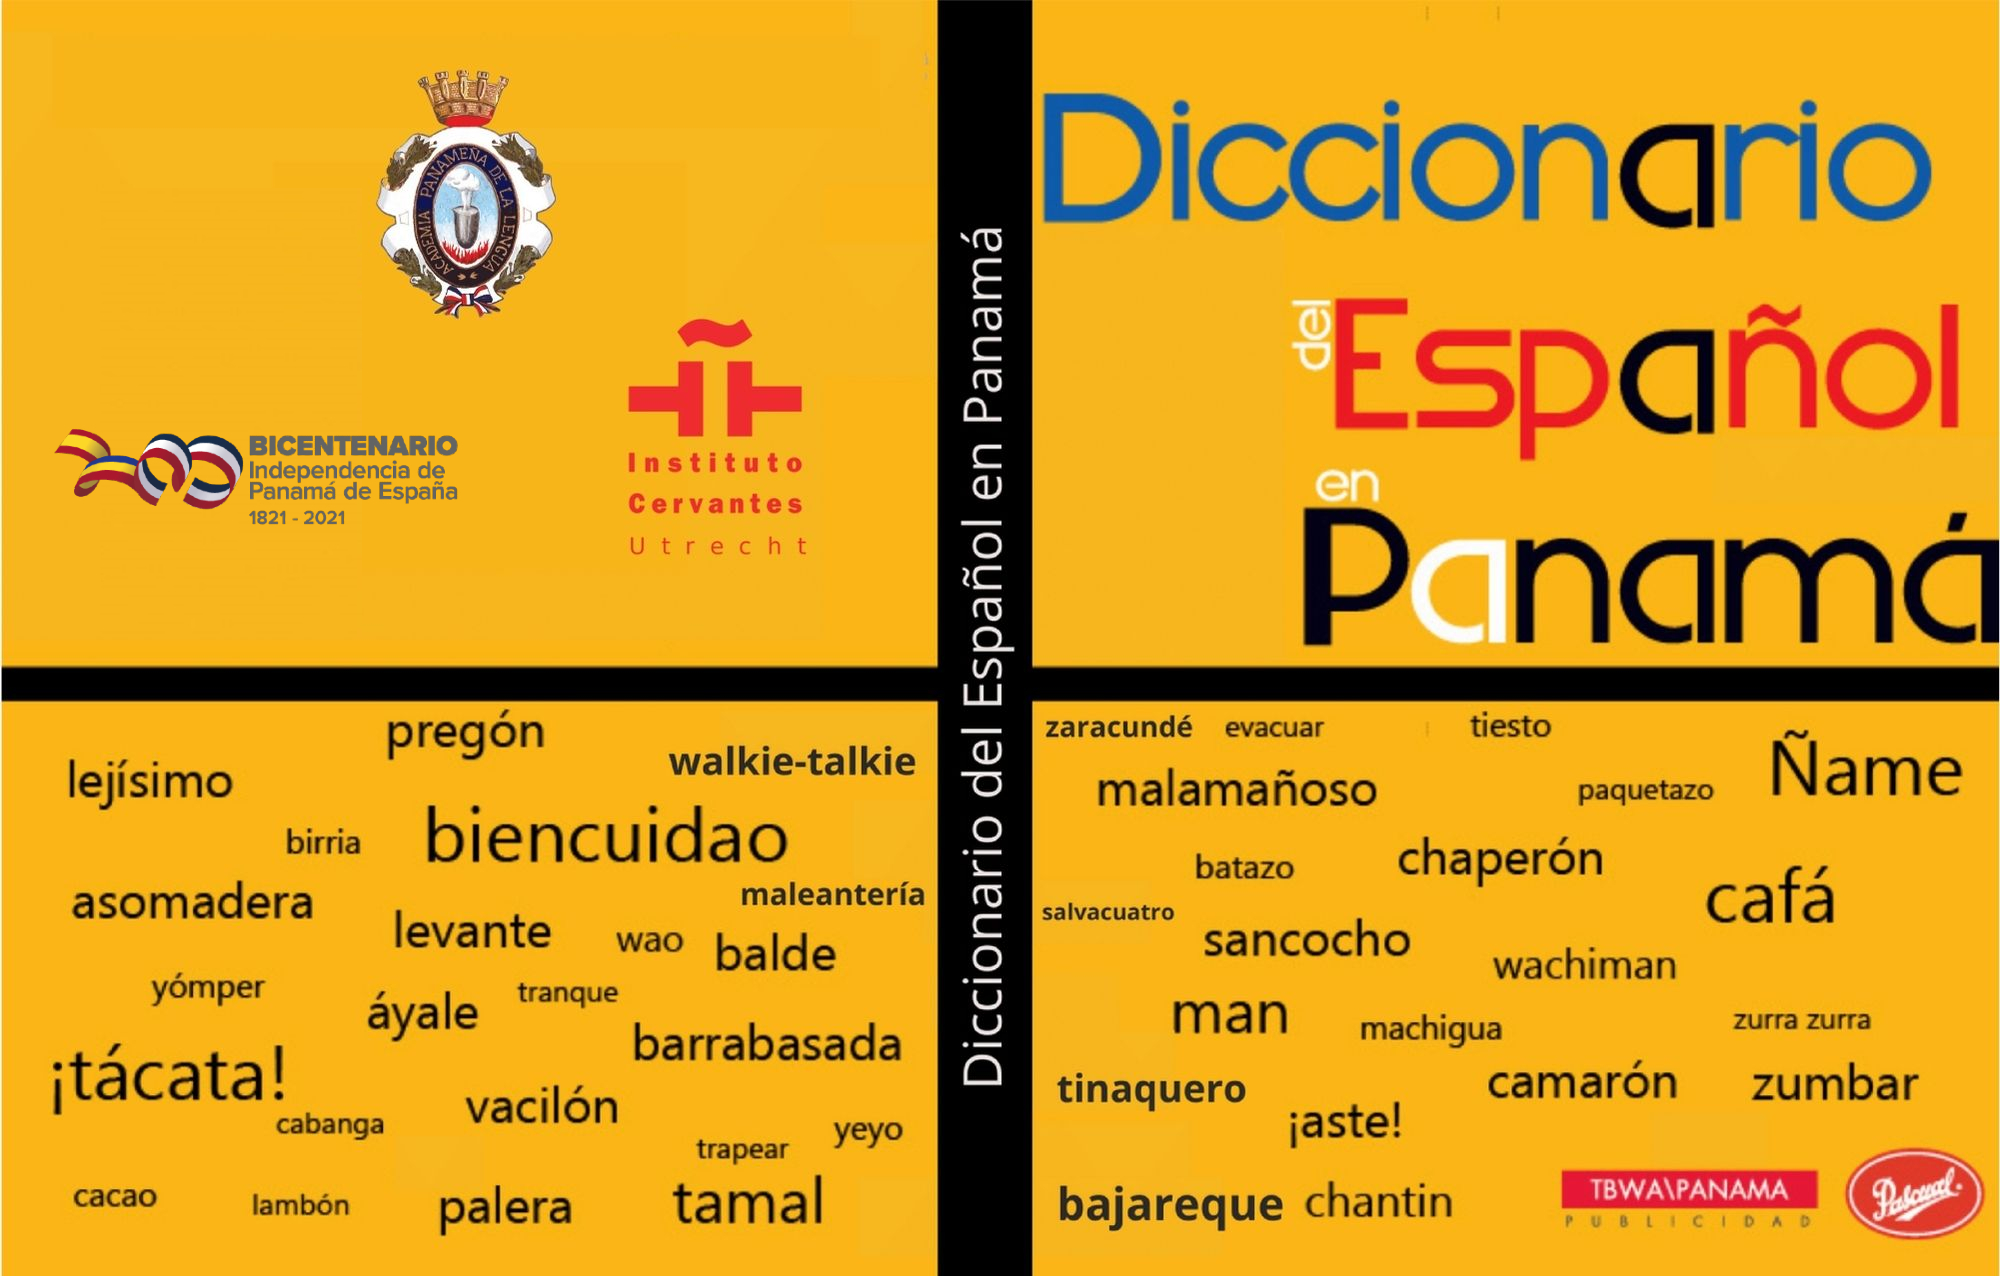 Diccionario del español en Panamá